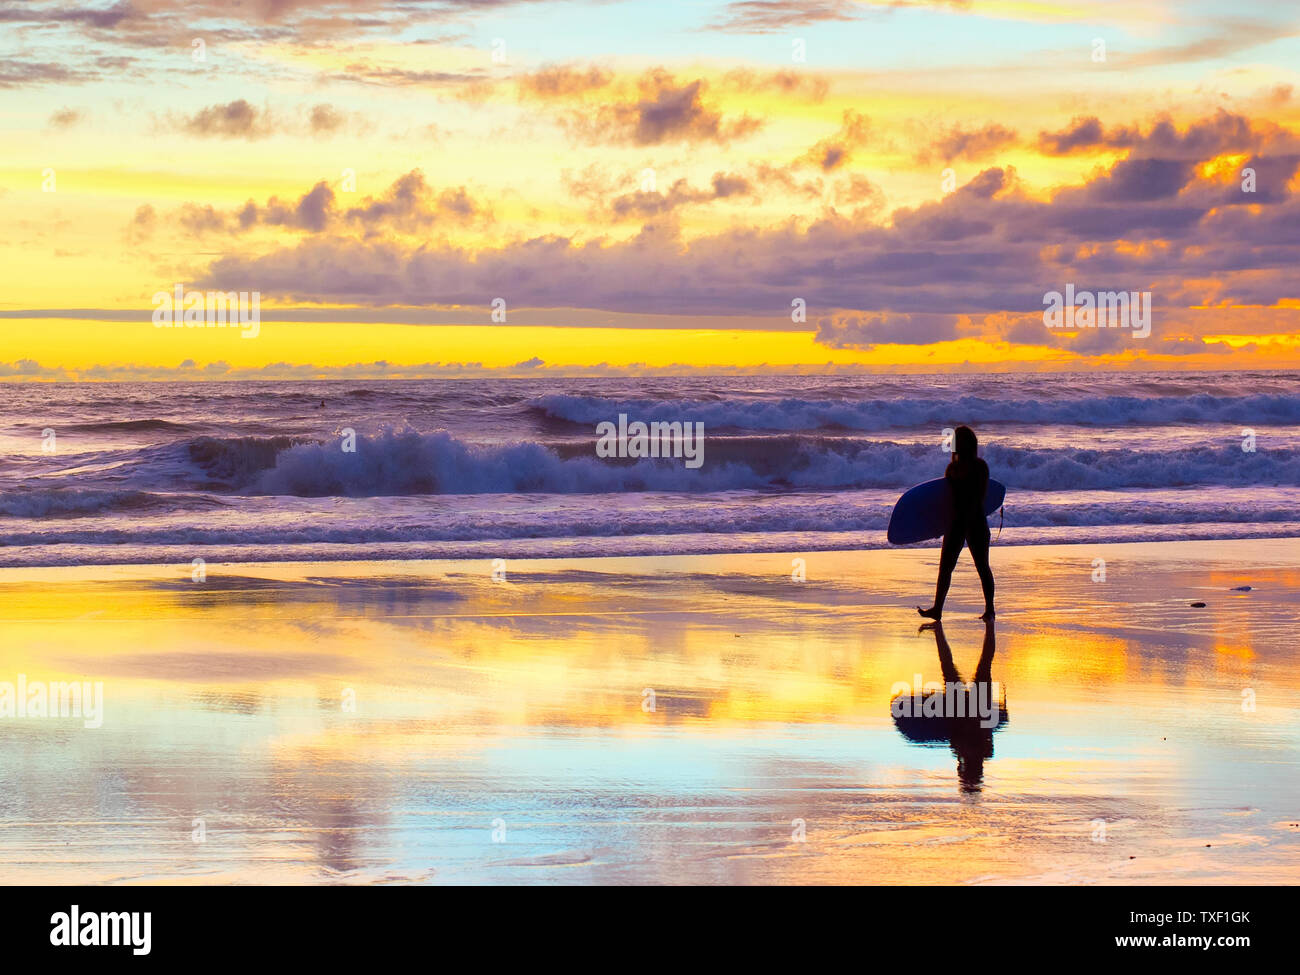 Surfer gehen am Strand mit Surfbrett bei Sonnenuntergang. Bali, Indonesien Stockfoto